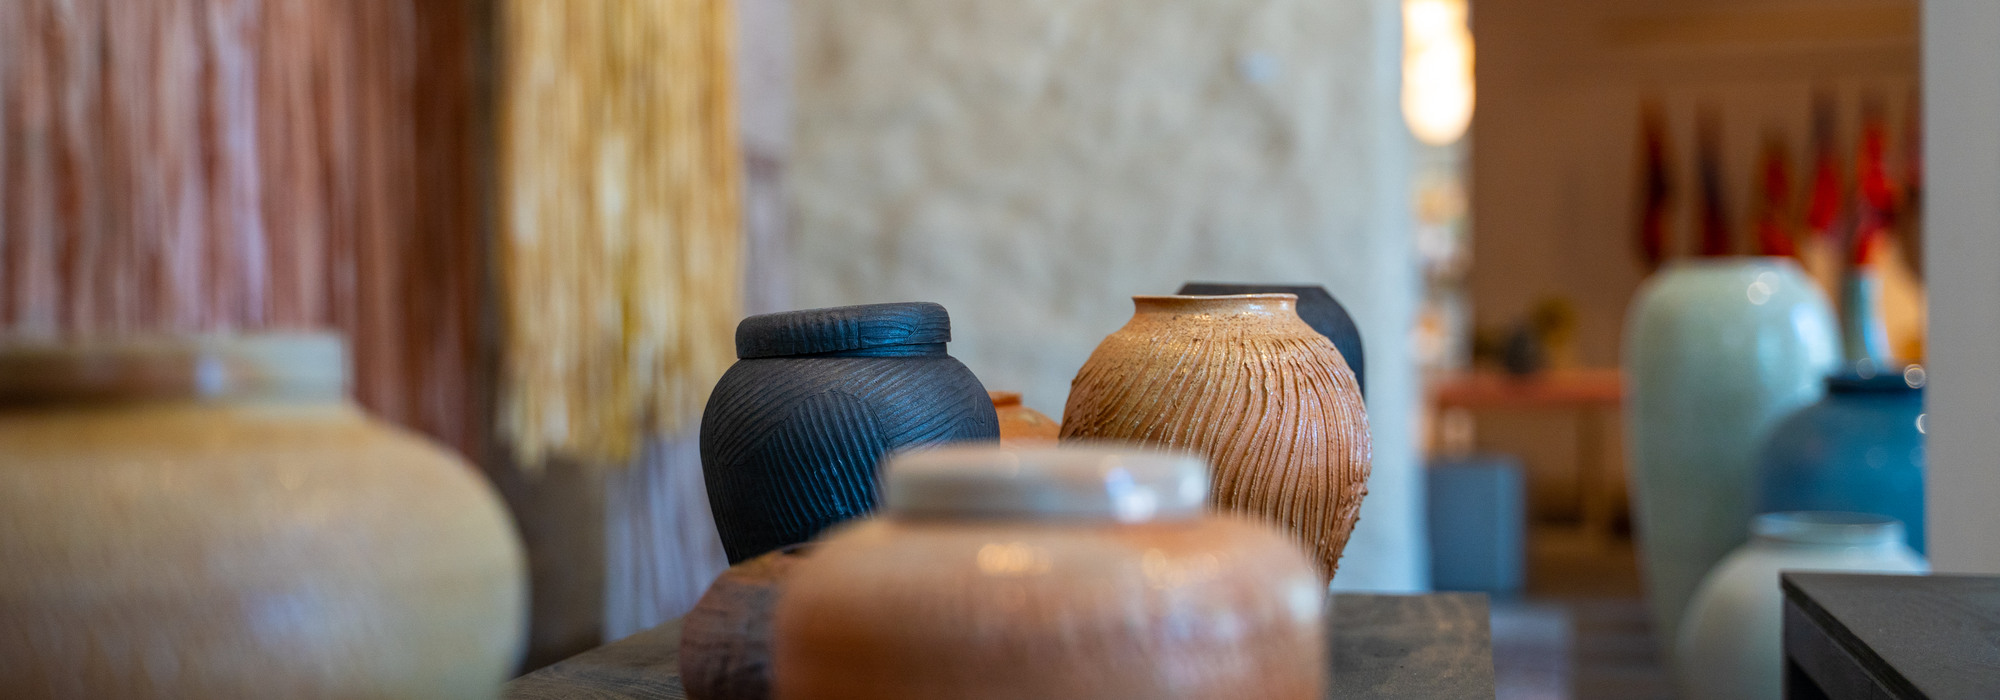 Keramiska vaser i olika färger.